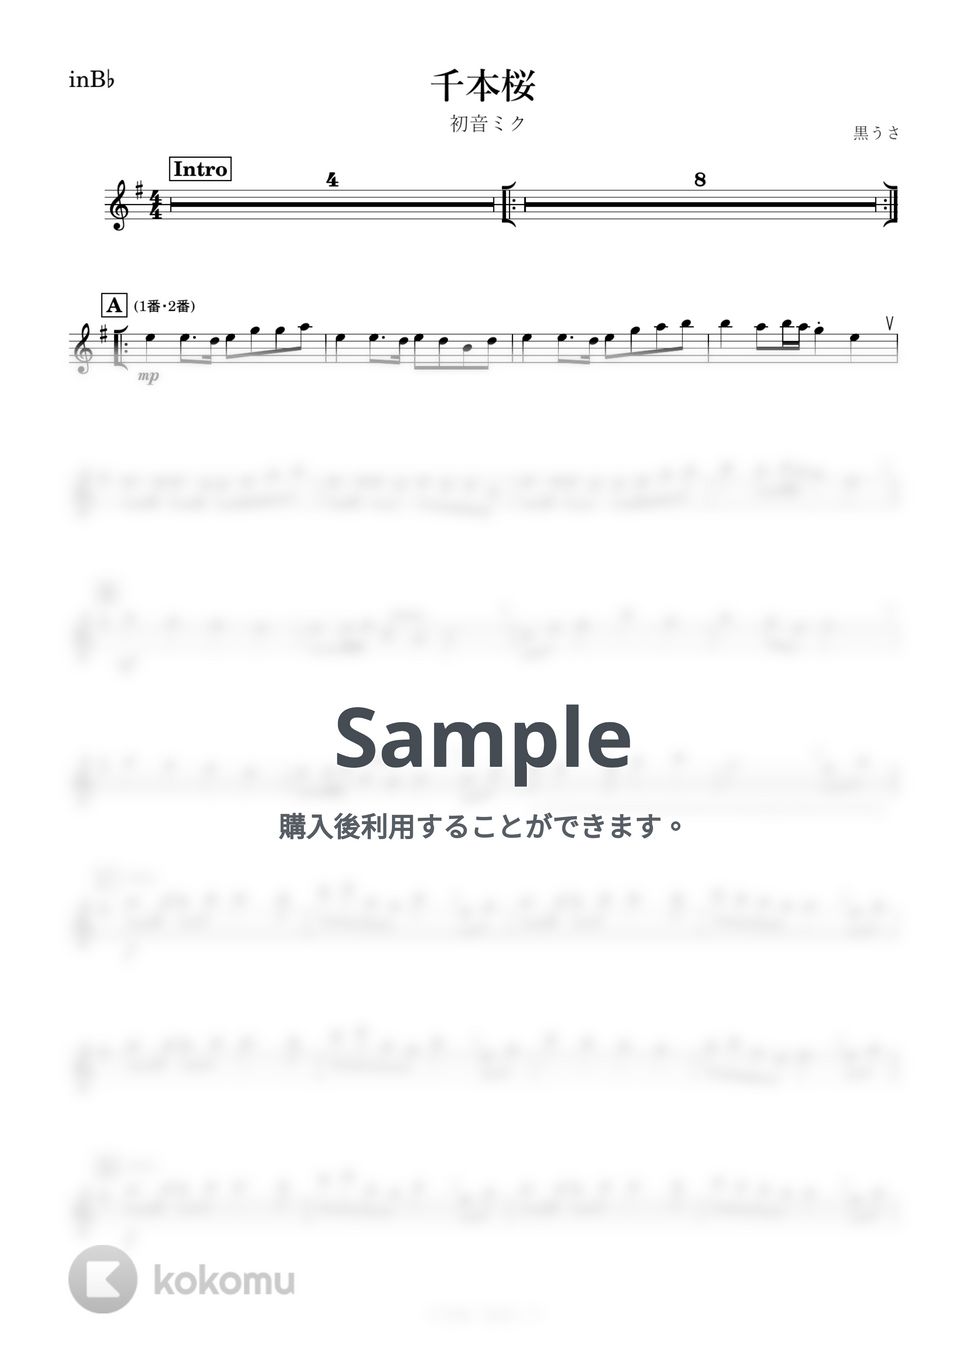 初音ミク - 千本桜 (B♭) by kanamusic